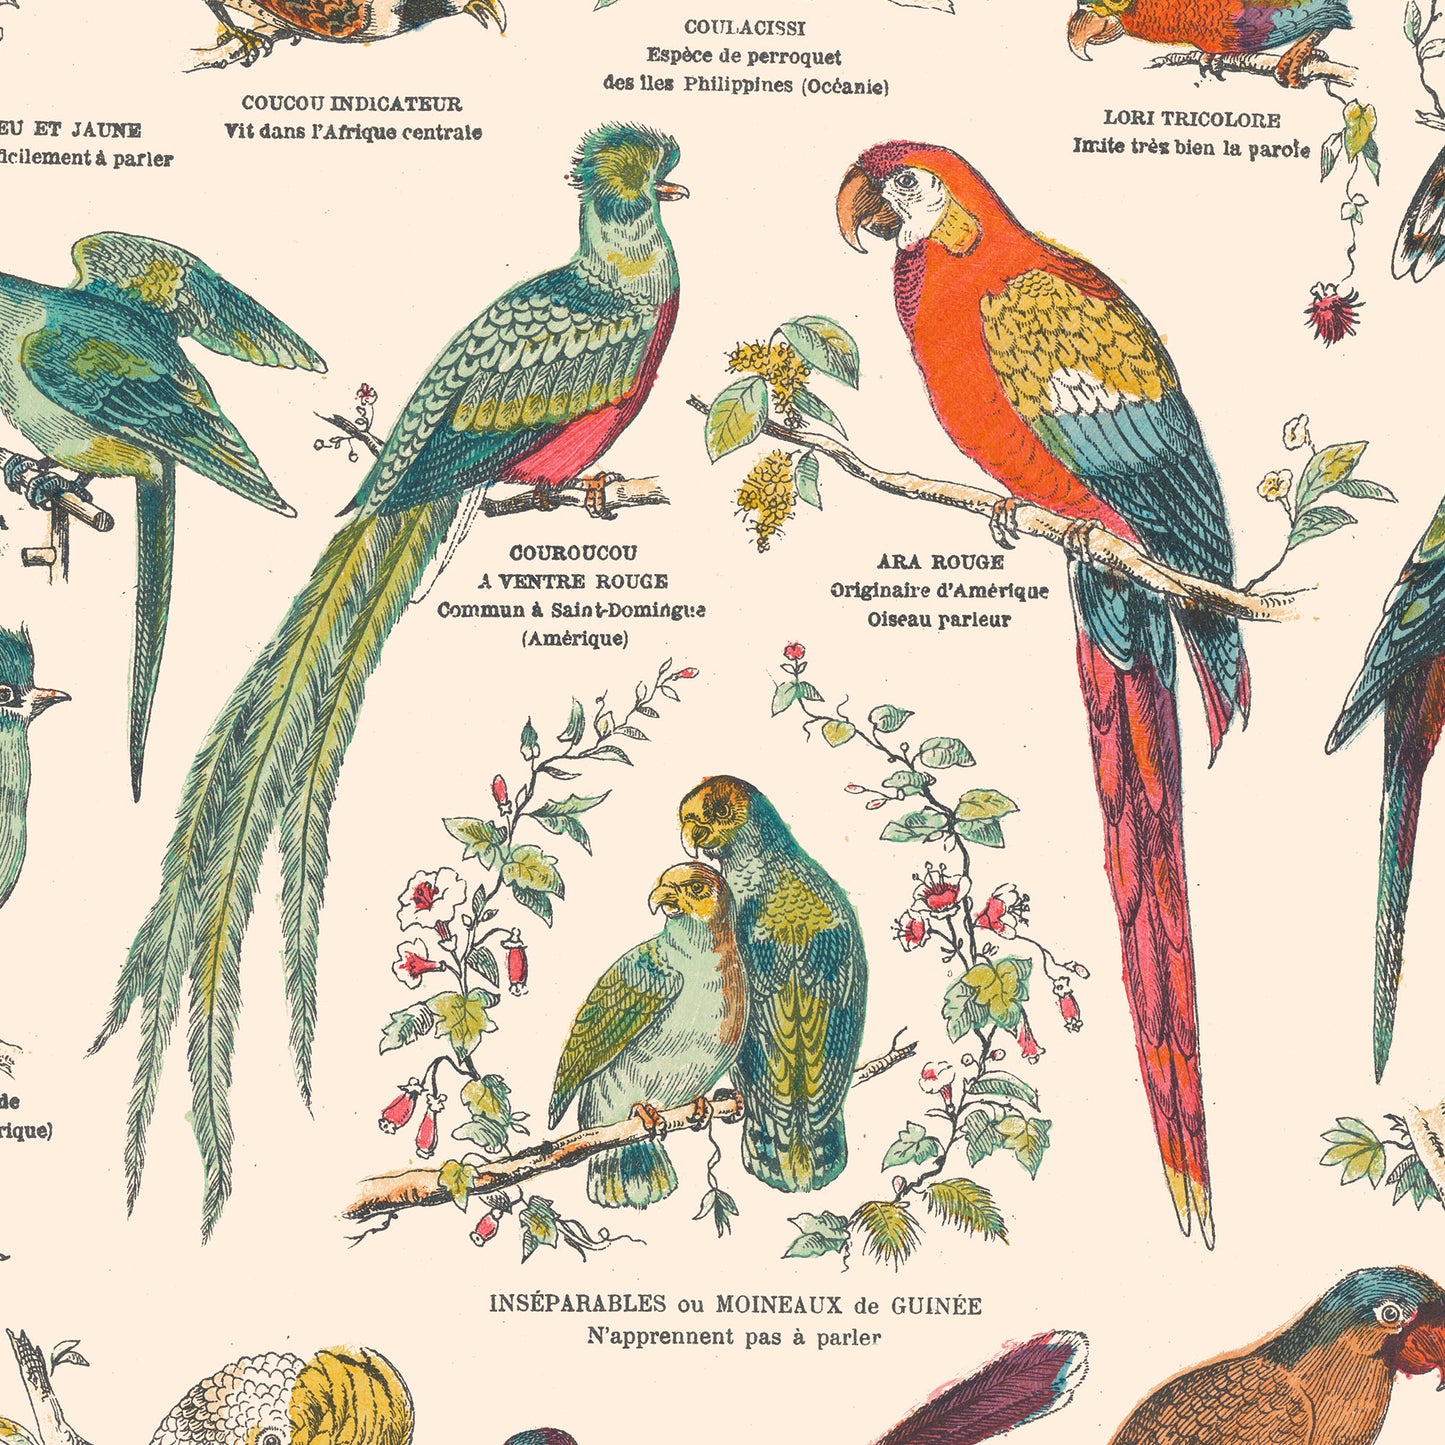 Affiche : Oiseaux, Grimpeurs - Planche éducative